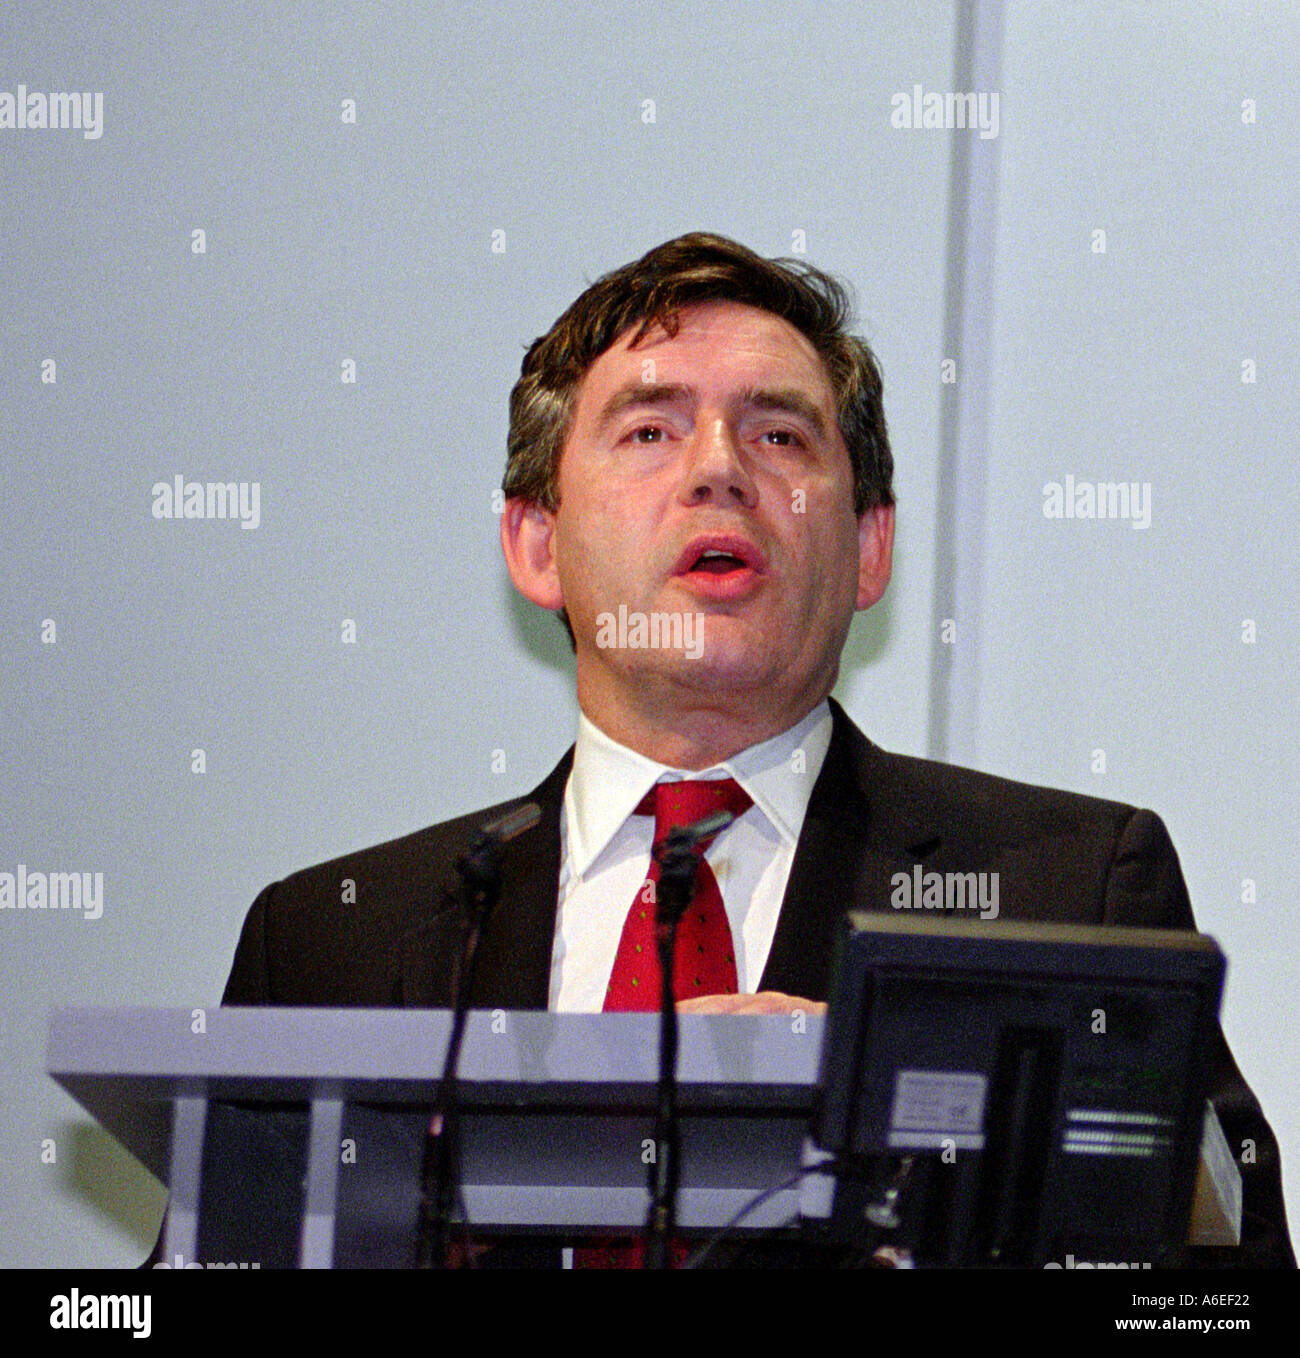 Gordon Brown, Chancelier de l'Échiquier du Royaume-Uni Banque D'Images